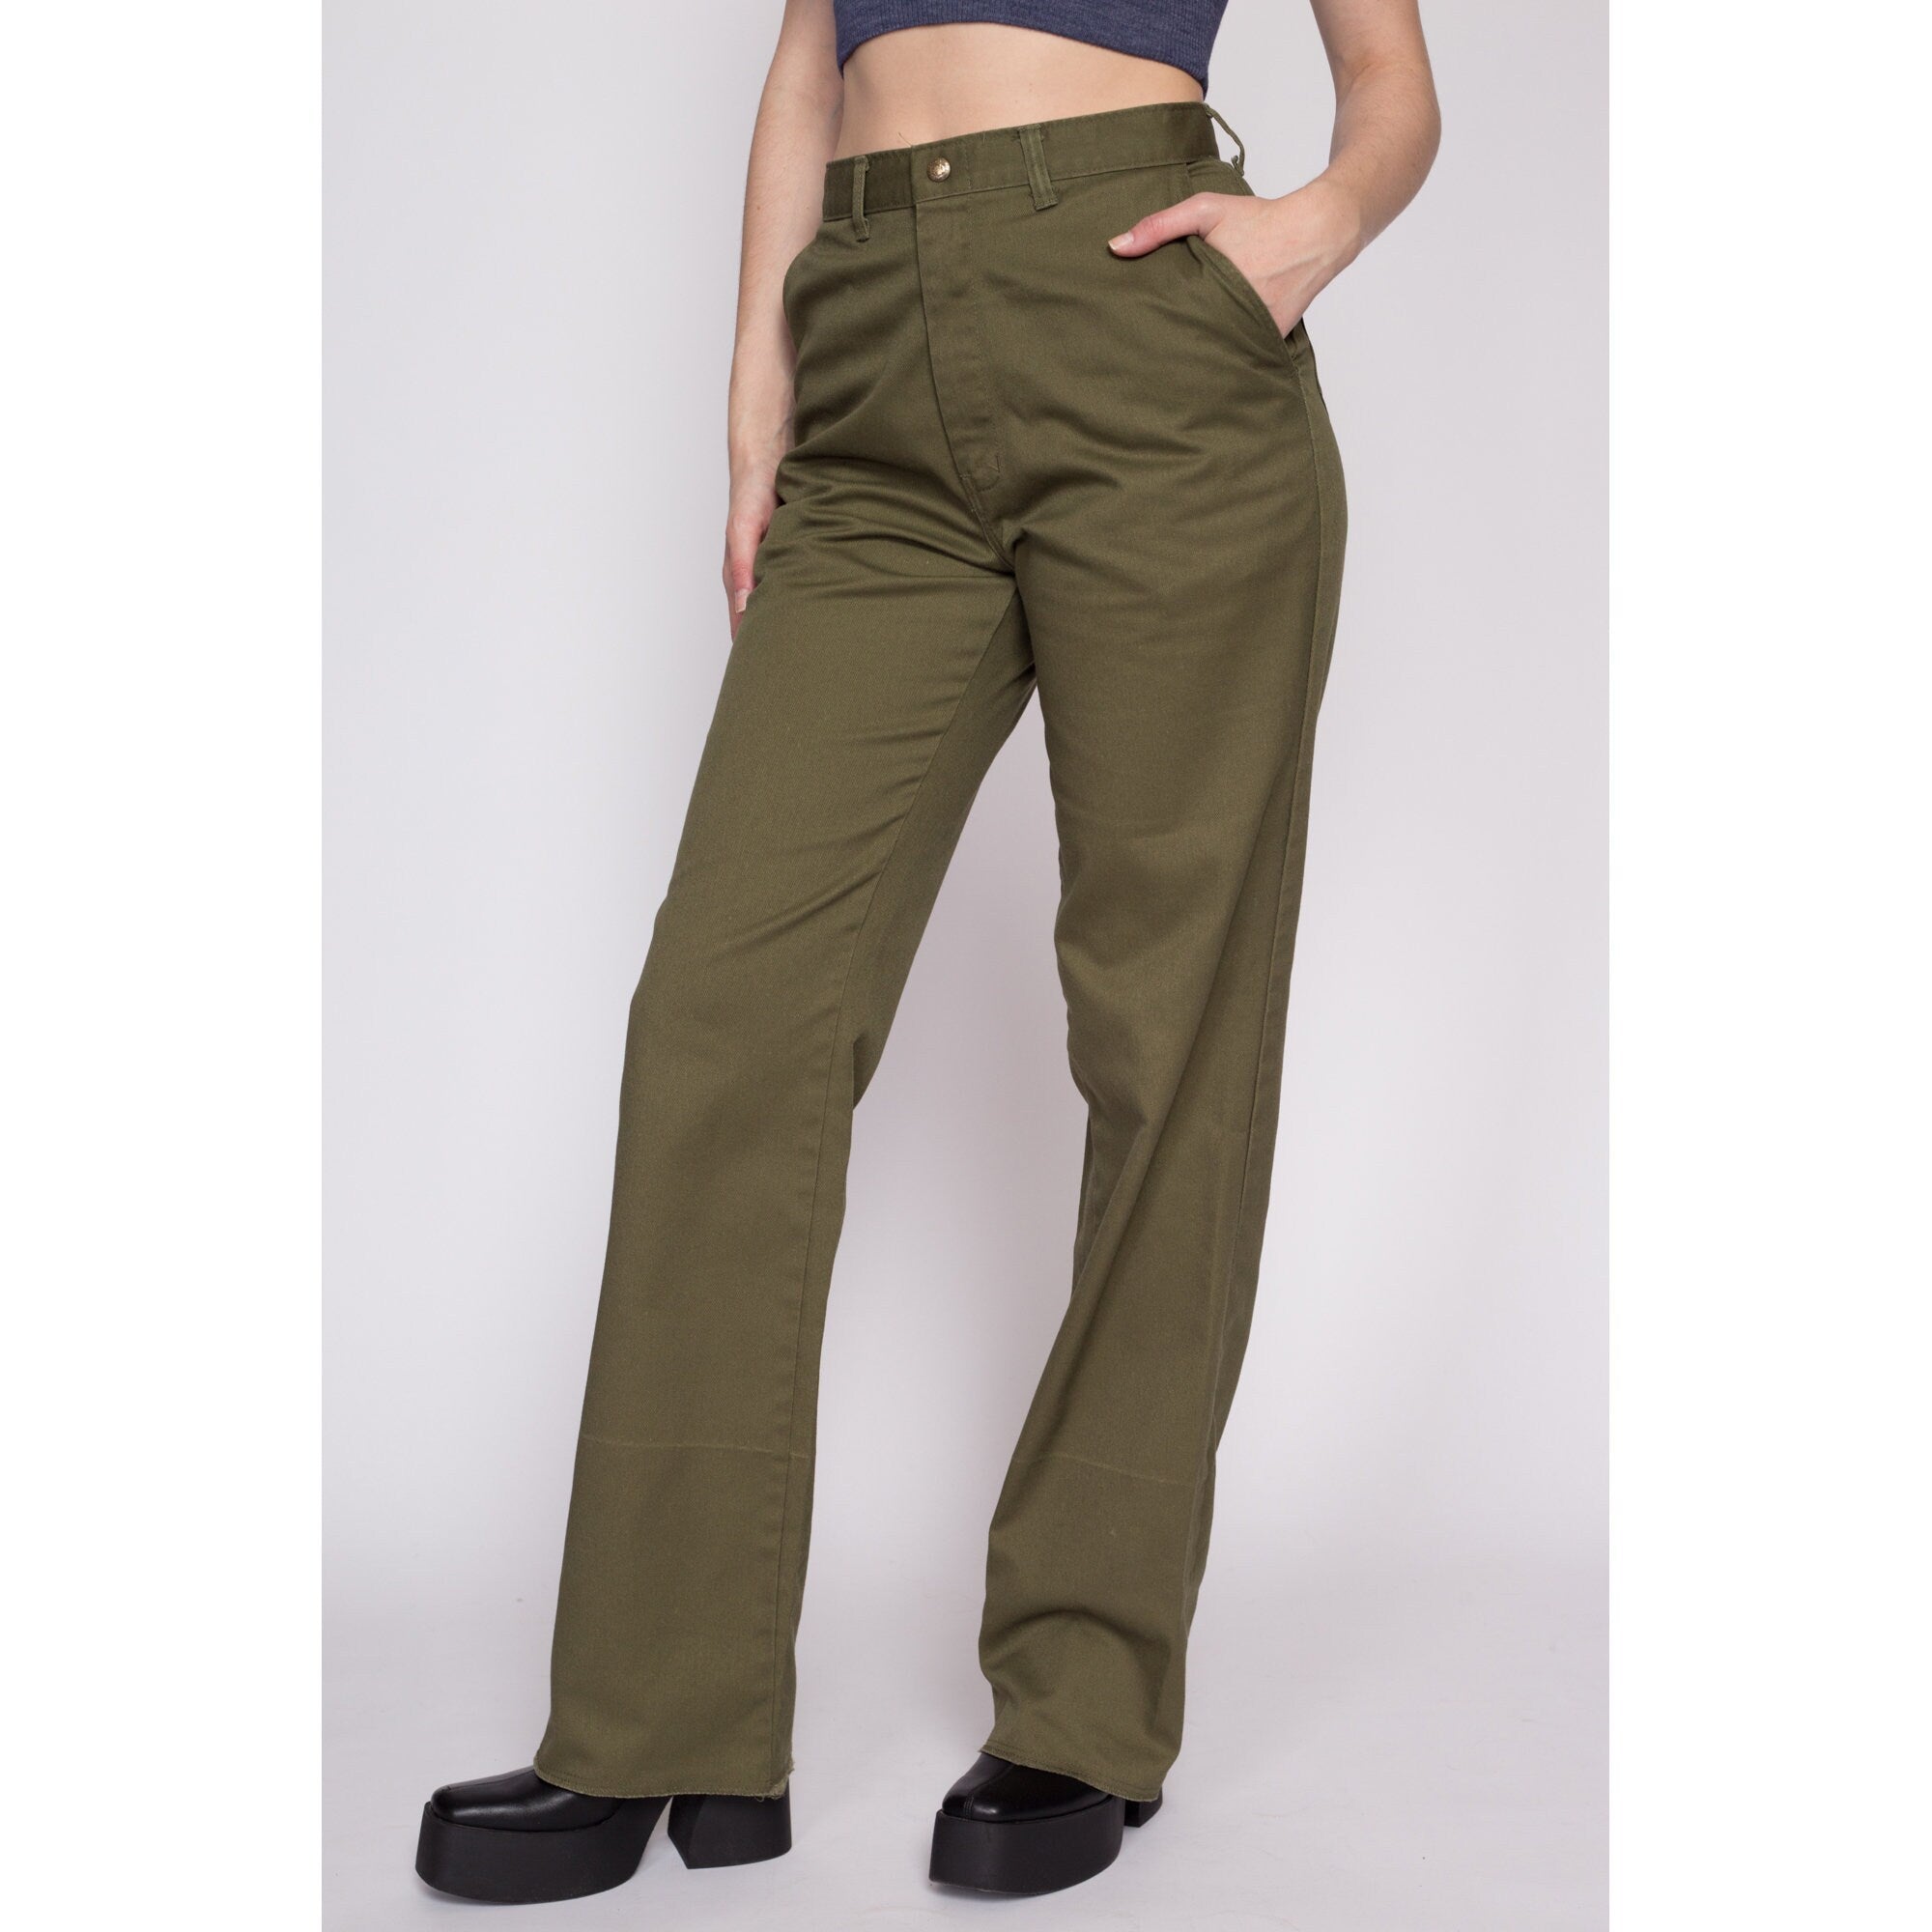 70s Boy Scout Uniform Pants - Men's Small, Women's Medium, 28.5